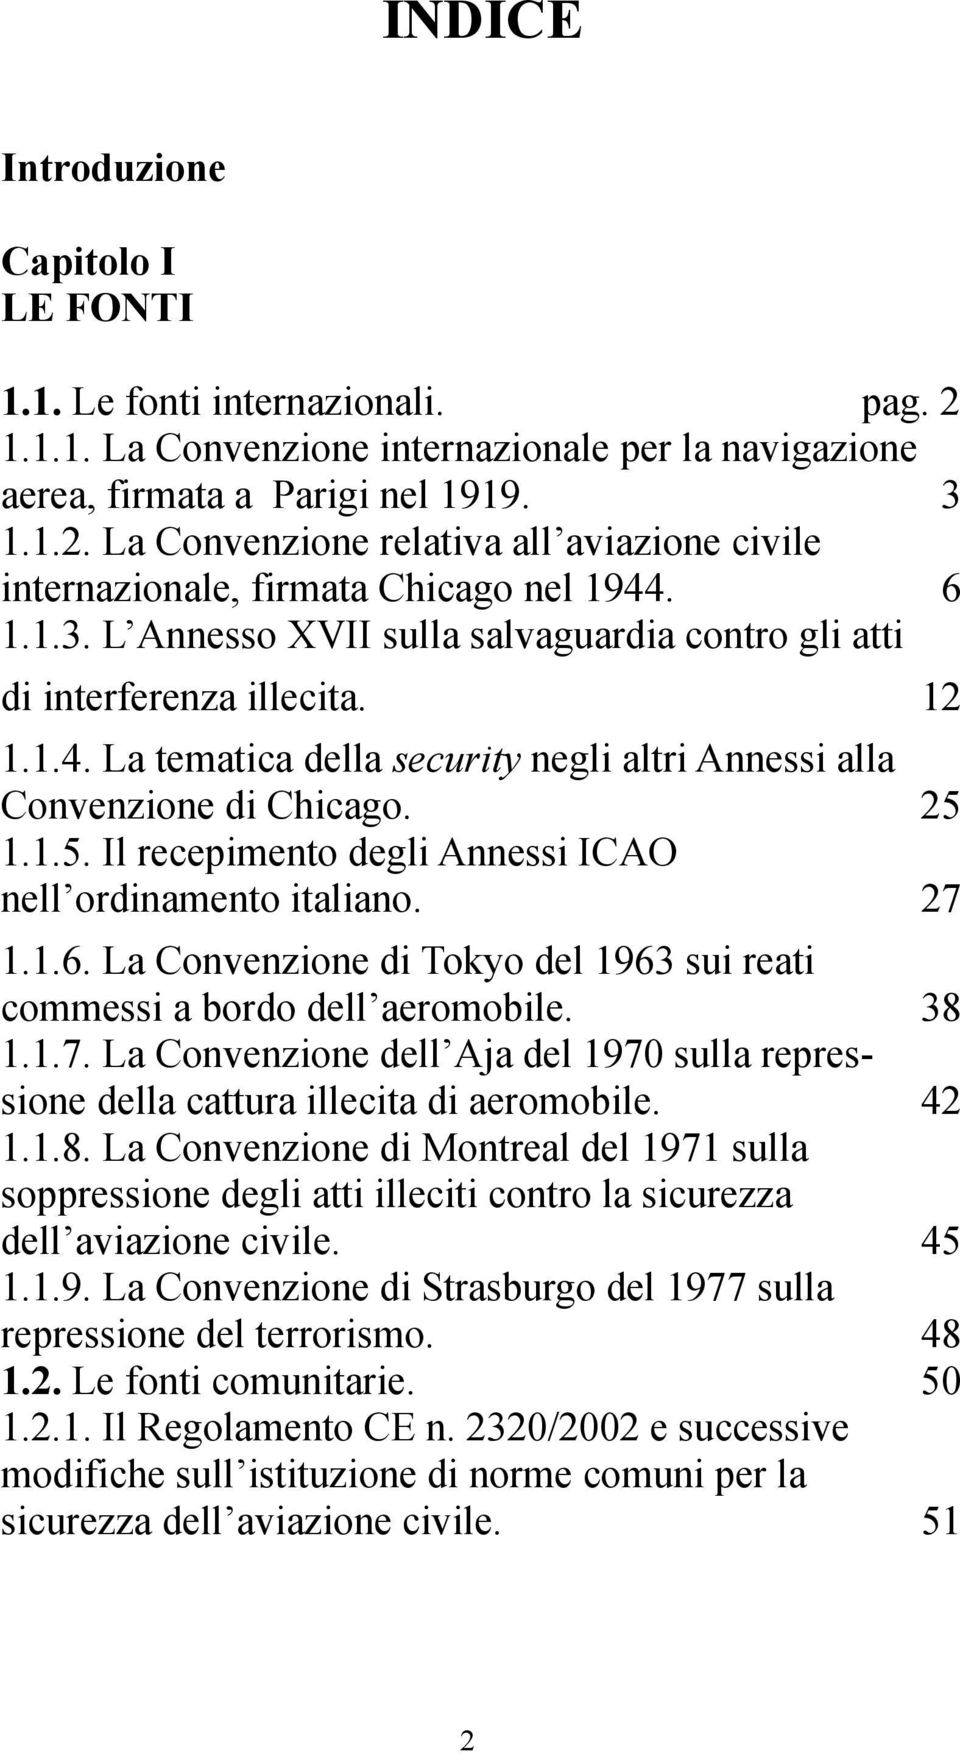 1.1.5. Il recepimento degli Annessi ICAO nell ordinamento italiano. 27 1.1.6. La Convenzione di Tokyo del 1963 sui reati commessi a bordo dell aeromobile. 38 1.1.7. La Convenzione dell Aja del 1970 sulla repressione della cattura illecita di aeromobile.